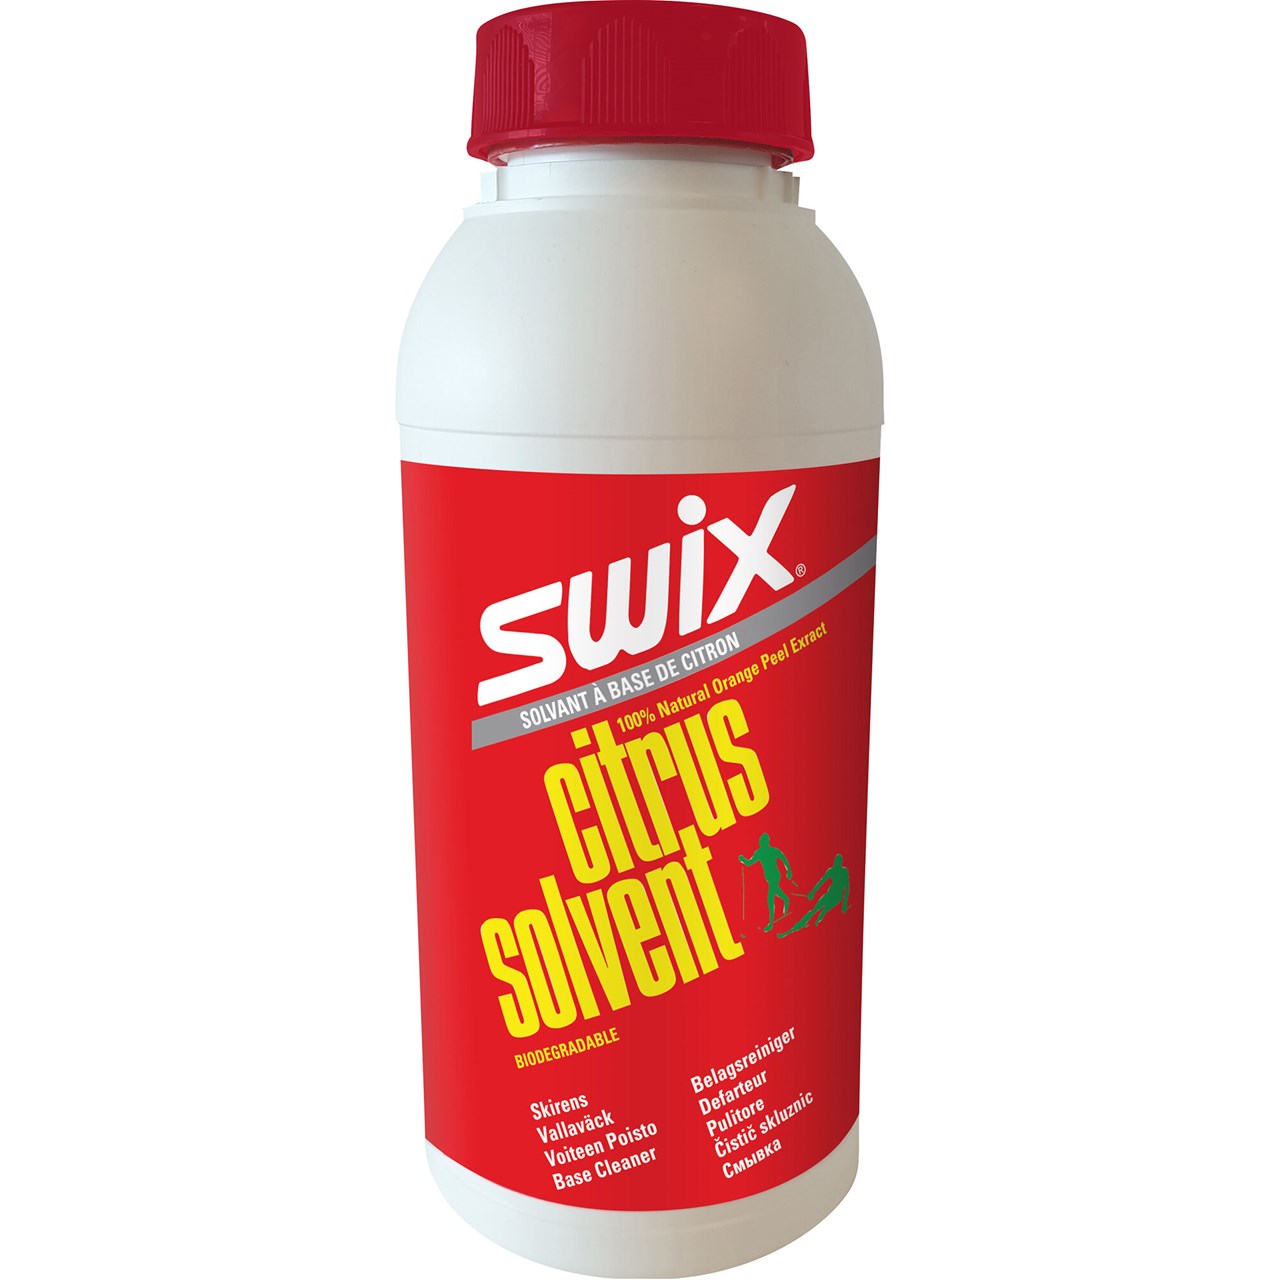 Swix  I74N Citrus  basecleaner, 500ml+C1